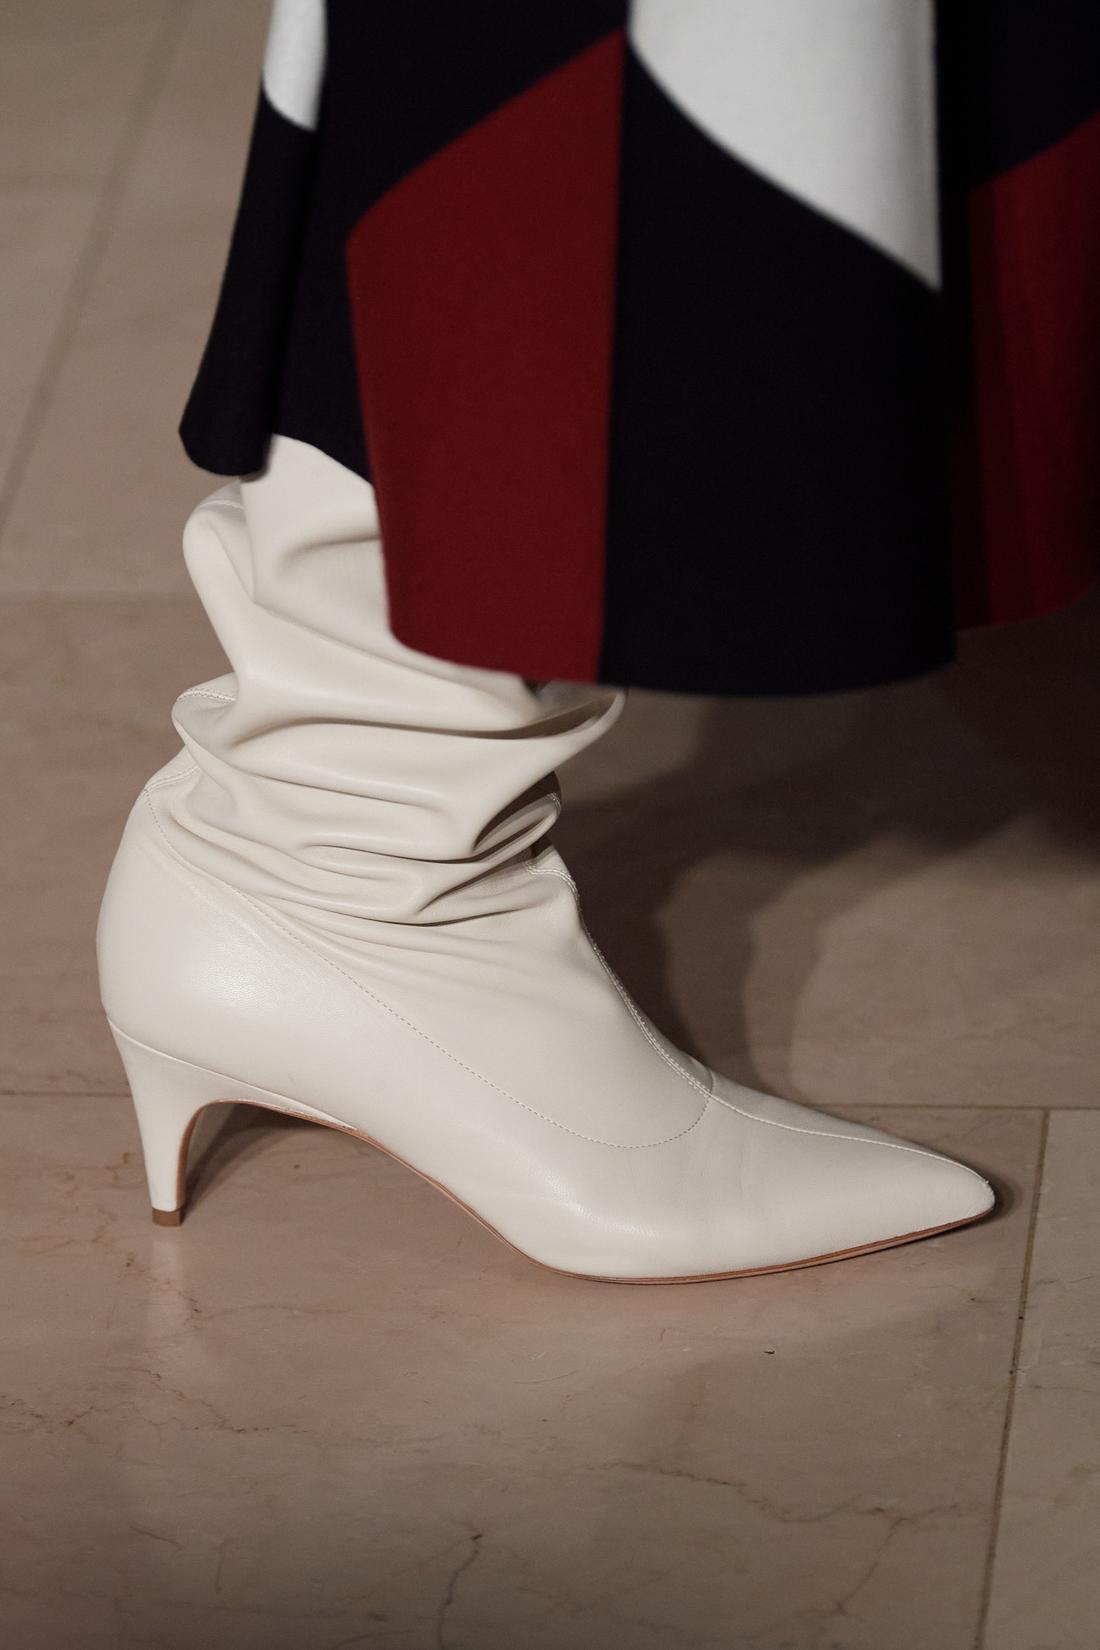 أحدث موديلات الحذاء الأبيض موضة شتاء 2021  Oscar_de_la_renta_1